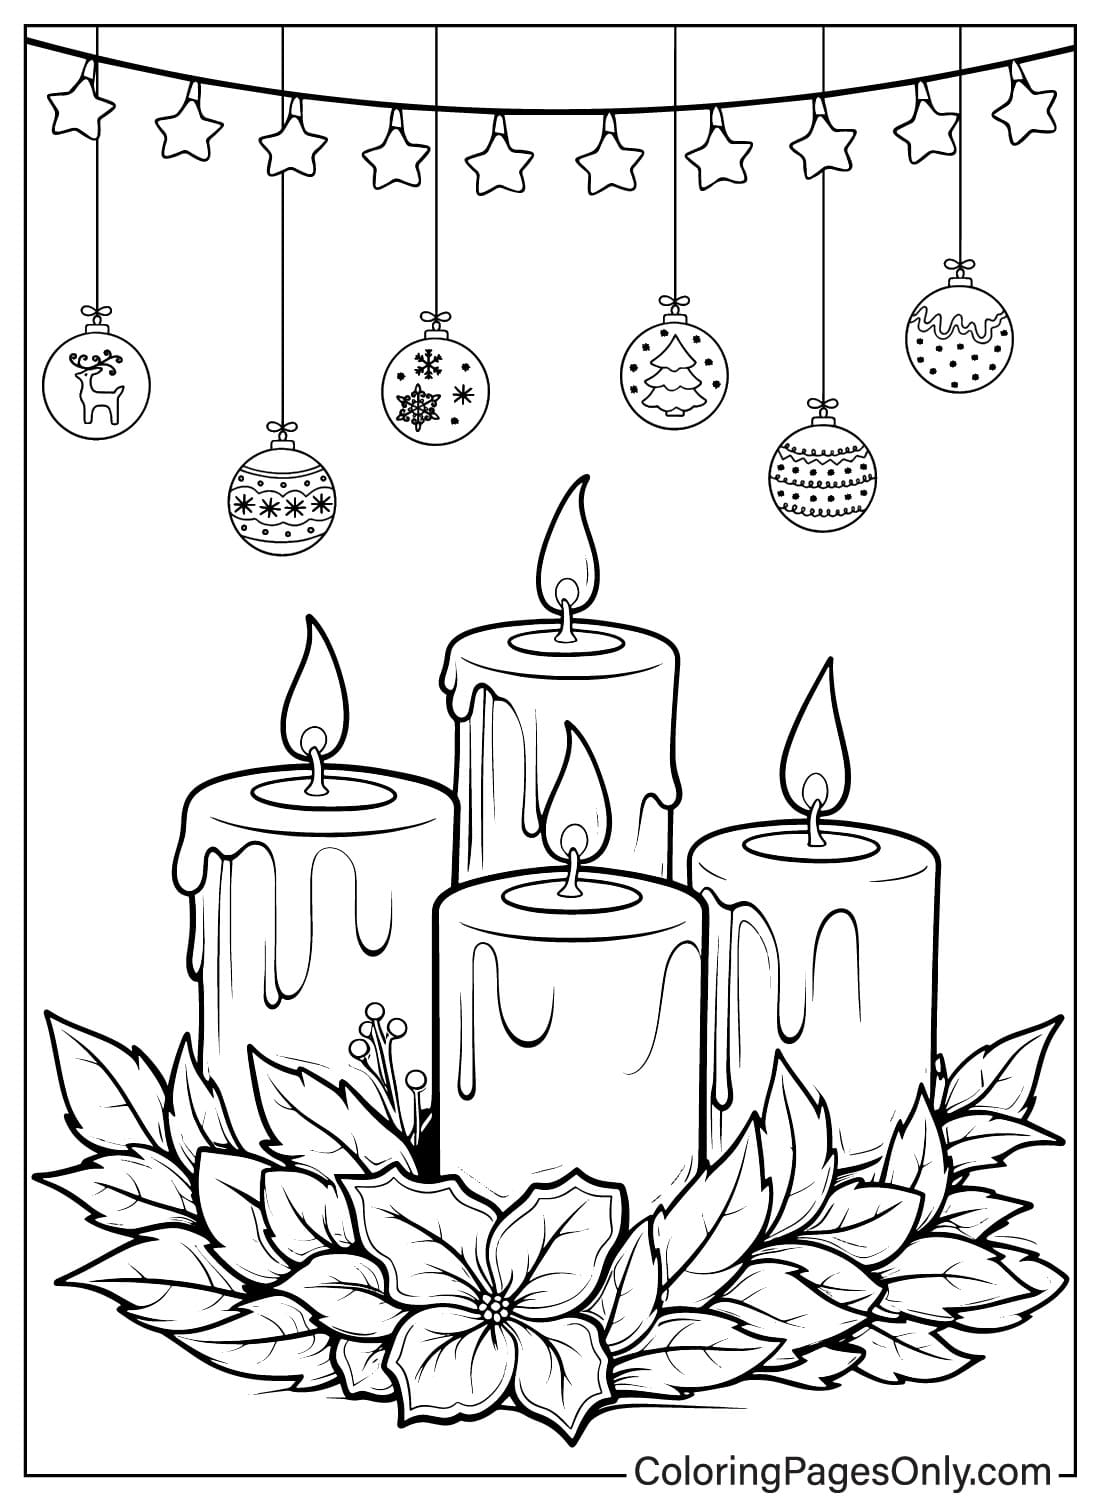 Página para colorear de velas de Navidad gratis de Velas de Navidad